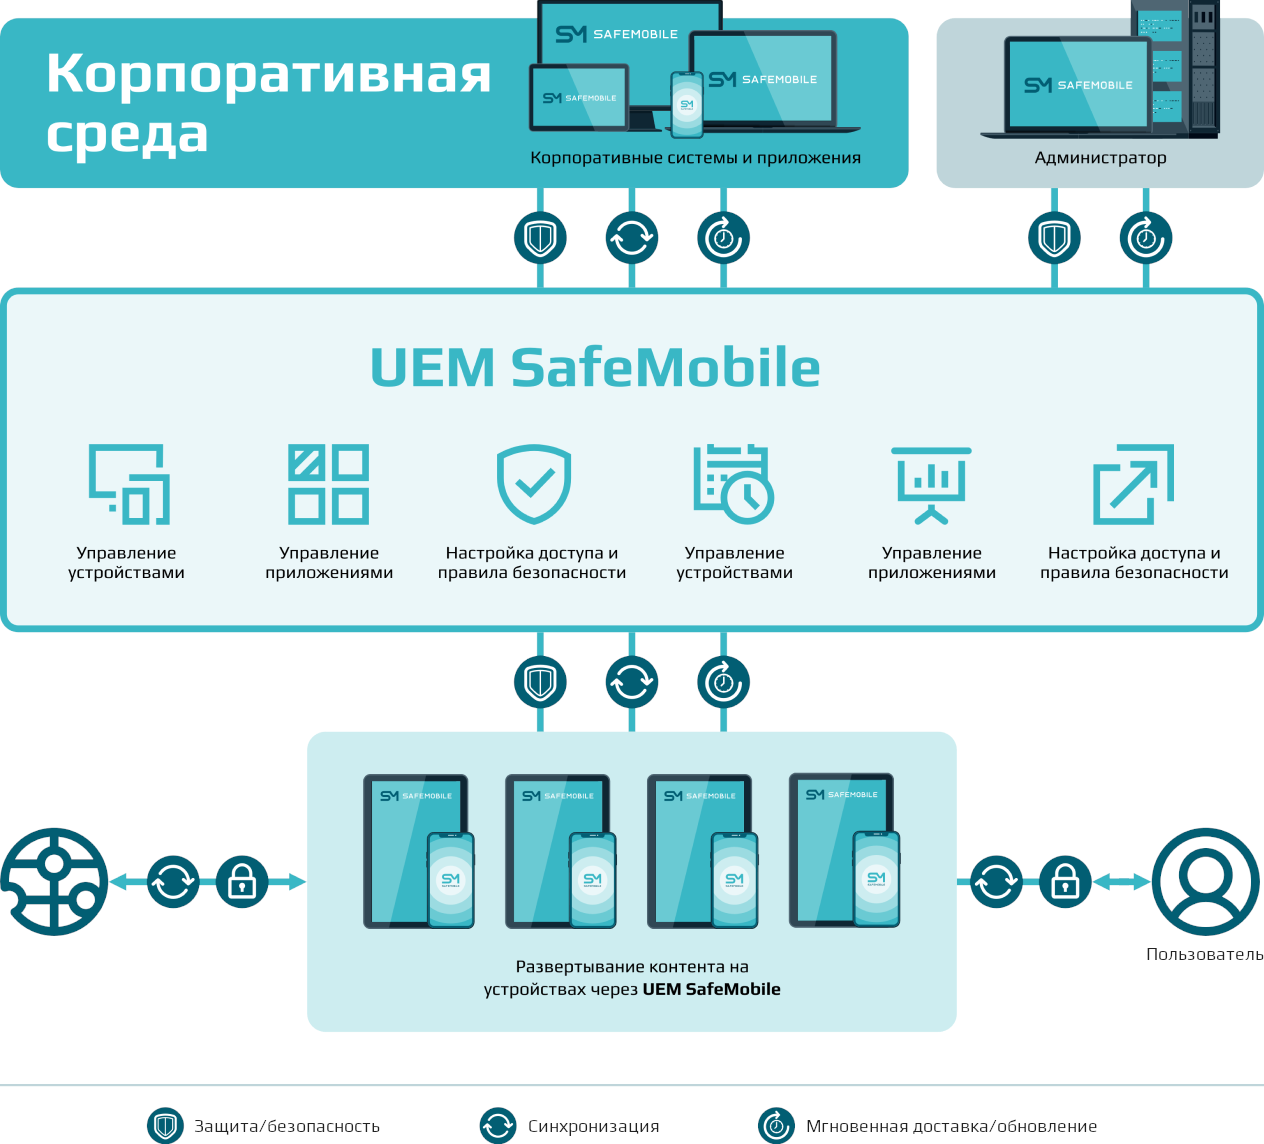 Обобщенная функциональная архитектура UEM SafeMobile схема